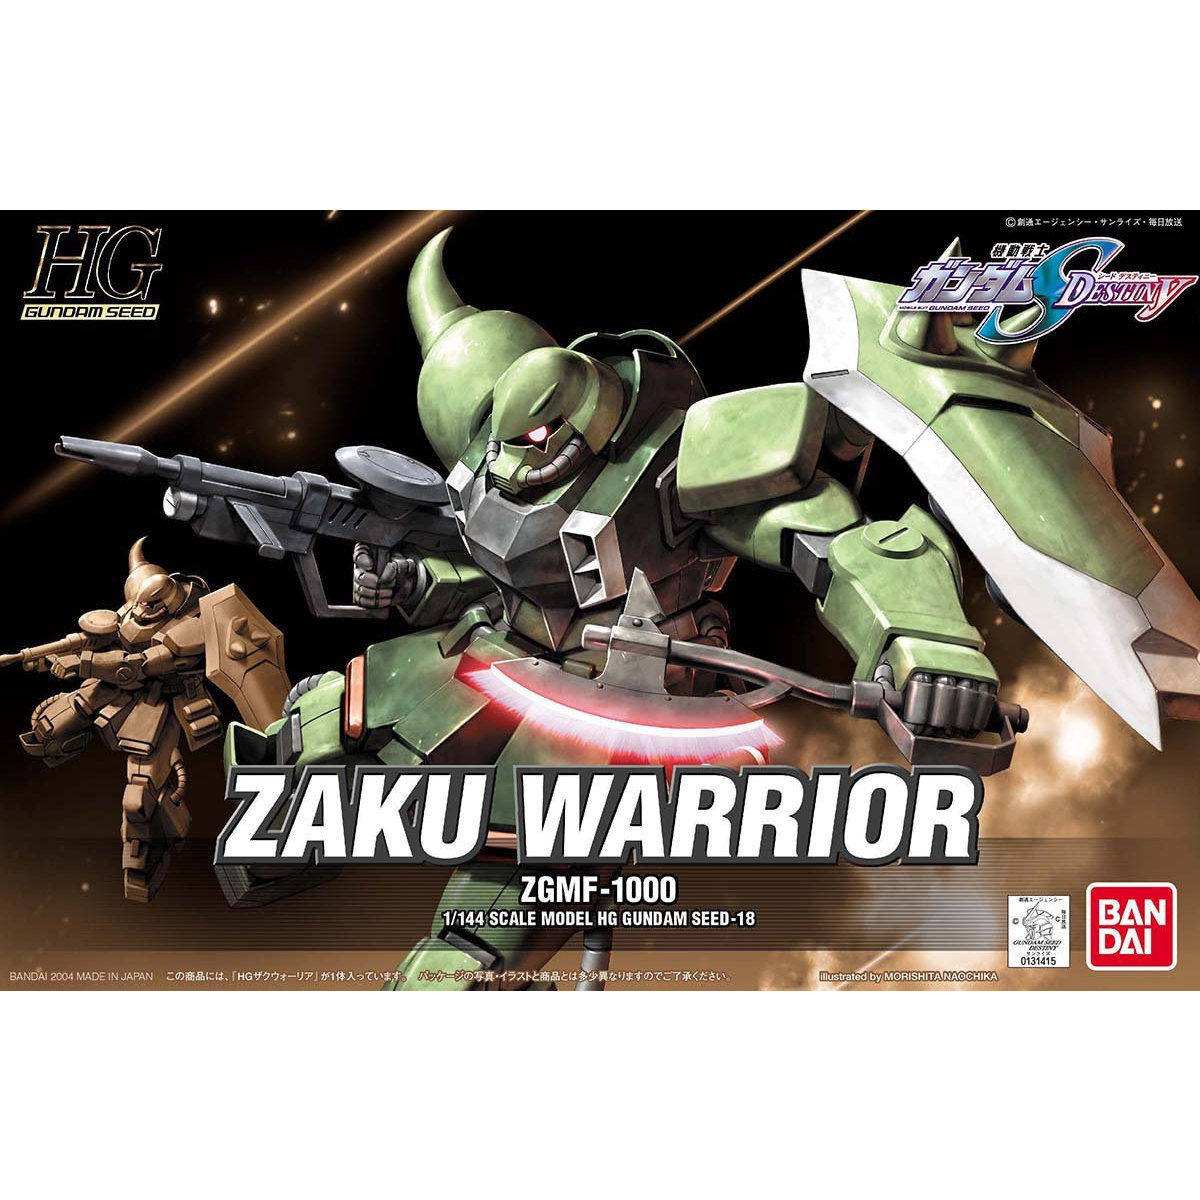 HGGS 1/144 No.18 ZGMF-1000 Zaku Warrior